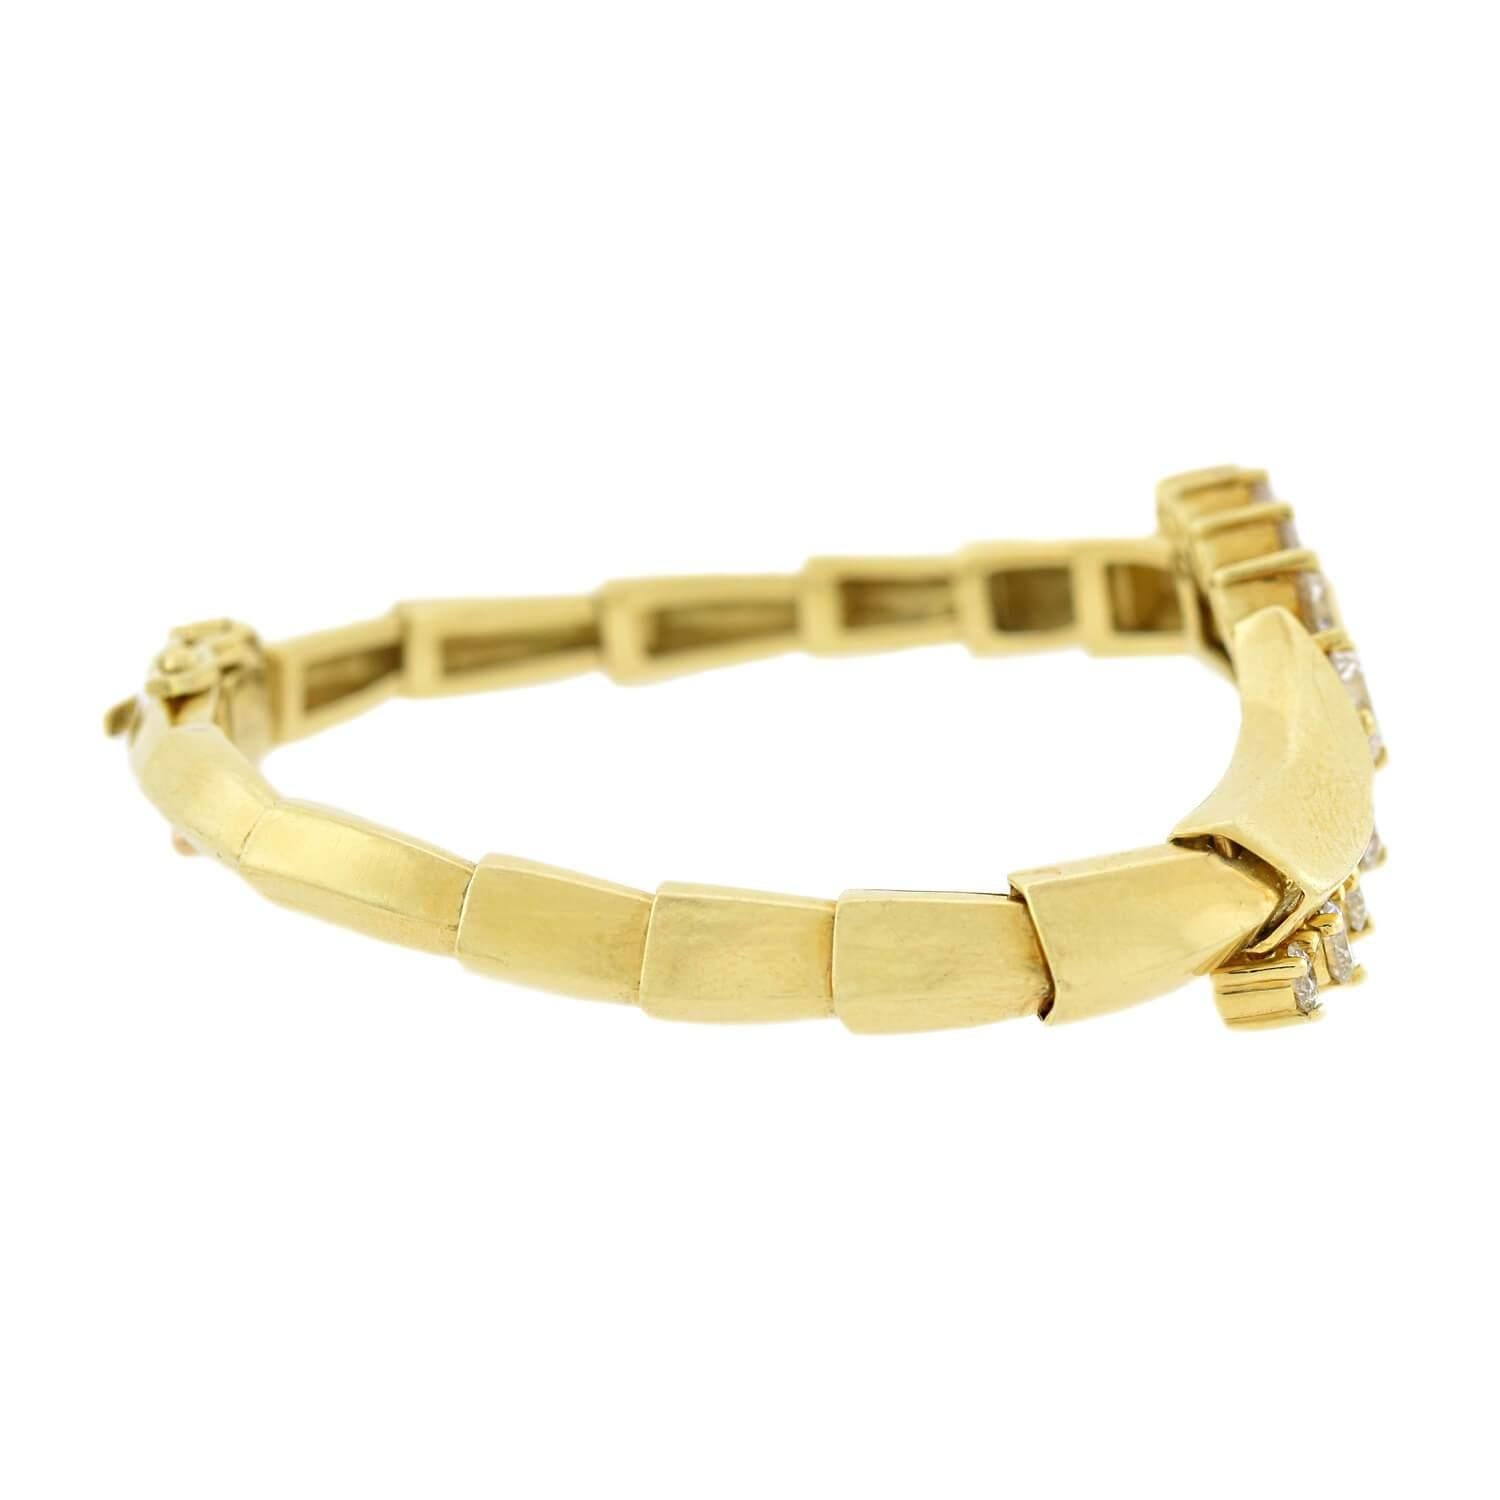 Ein fabelhaftes, modernes Diamantarmband des renommierten Schmuckdesigners Jose Hess! Dieses Armband aus leuchtendem 18-karätigem Gelbgold ist mit neun funkelnden Diamanten im modernen Brillantschliff besetzt, die sich entlang der Vorderseite eines